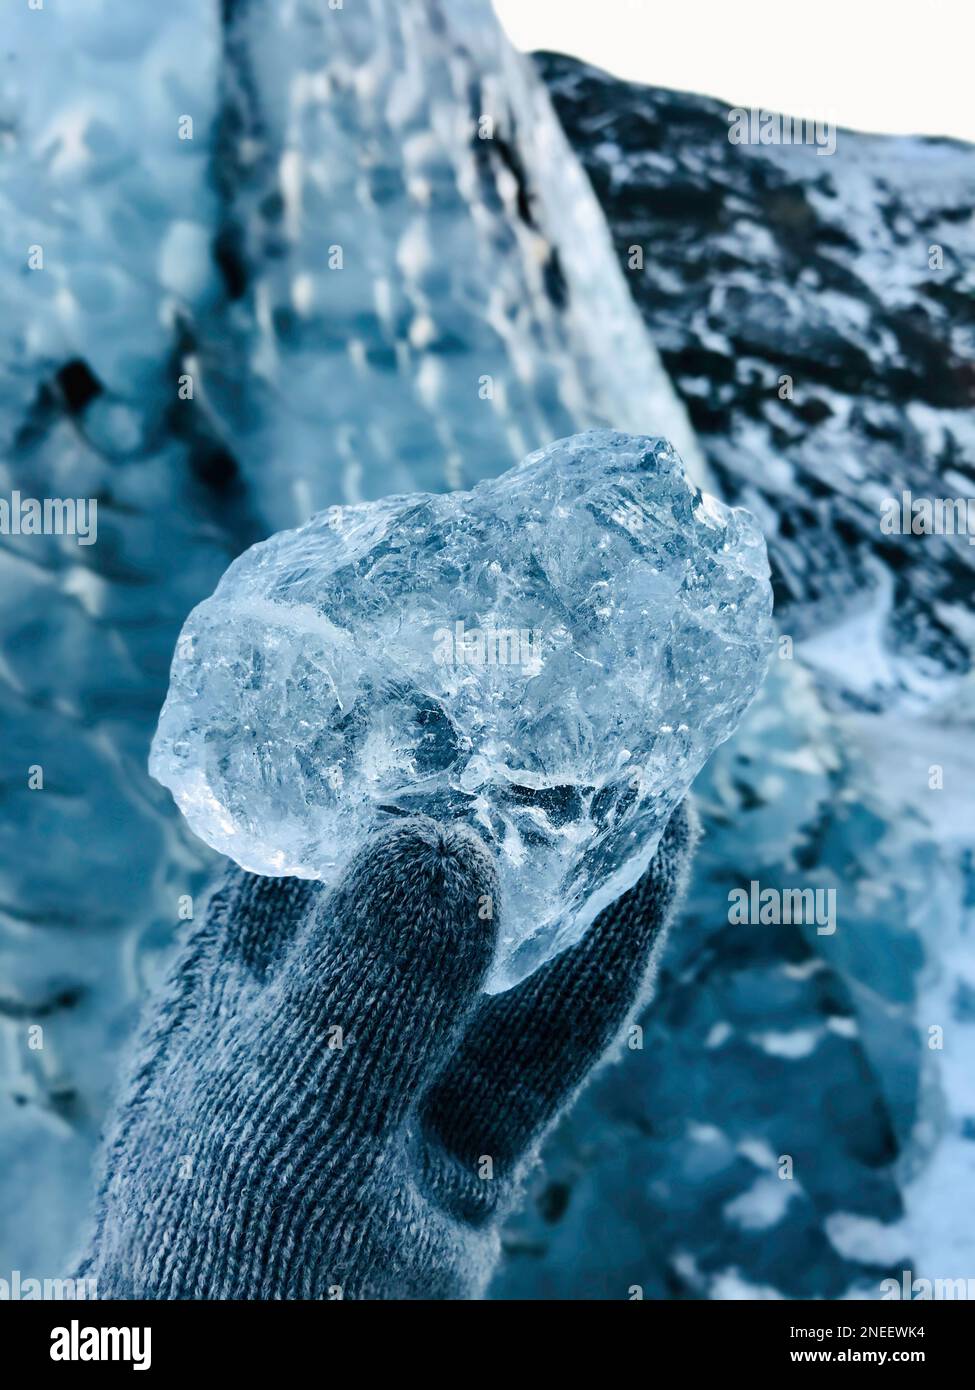 Gros plan de main gantée avec gant tenant un morceau de glace glacé et transparent provenant d'un glacier islandais, scène nordique glacée d'hiver Banque D'Images